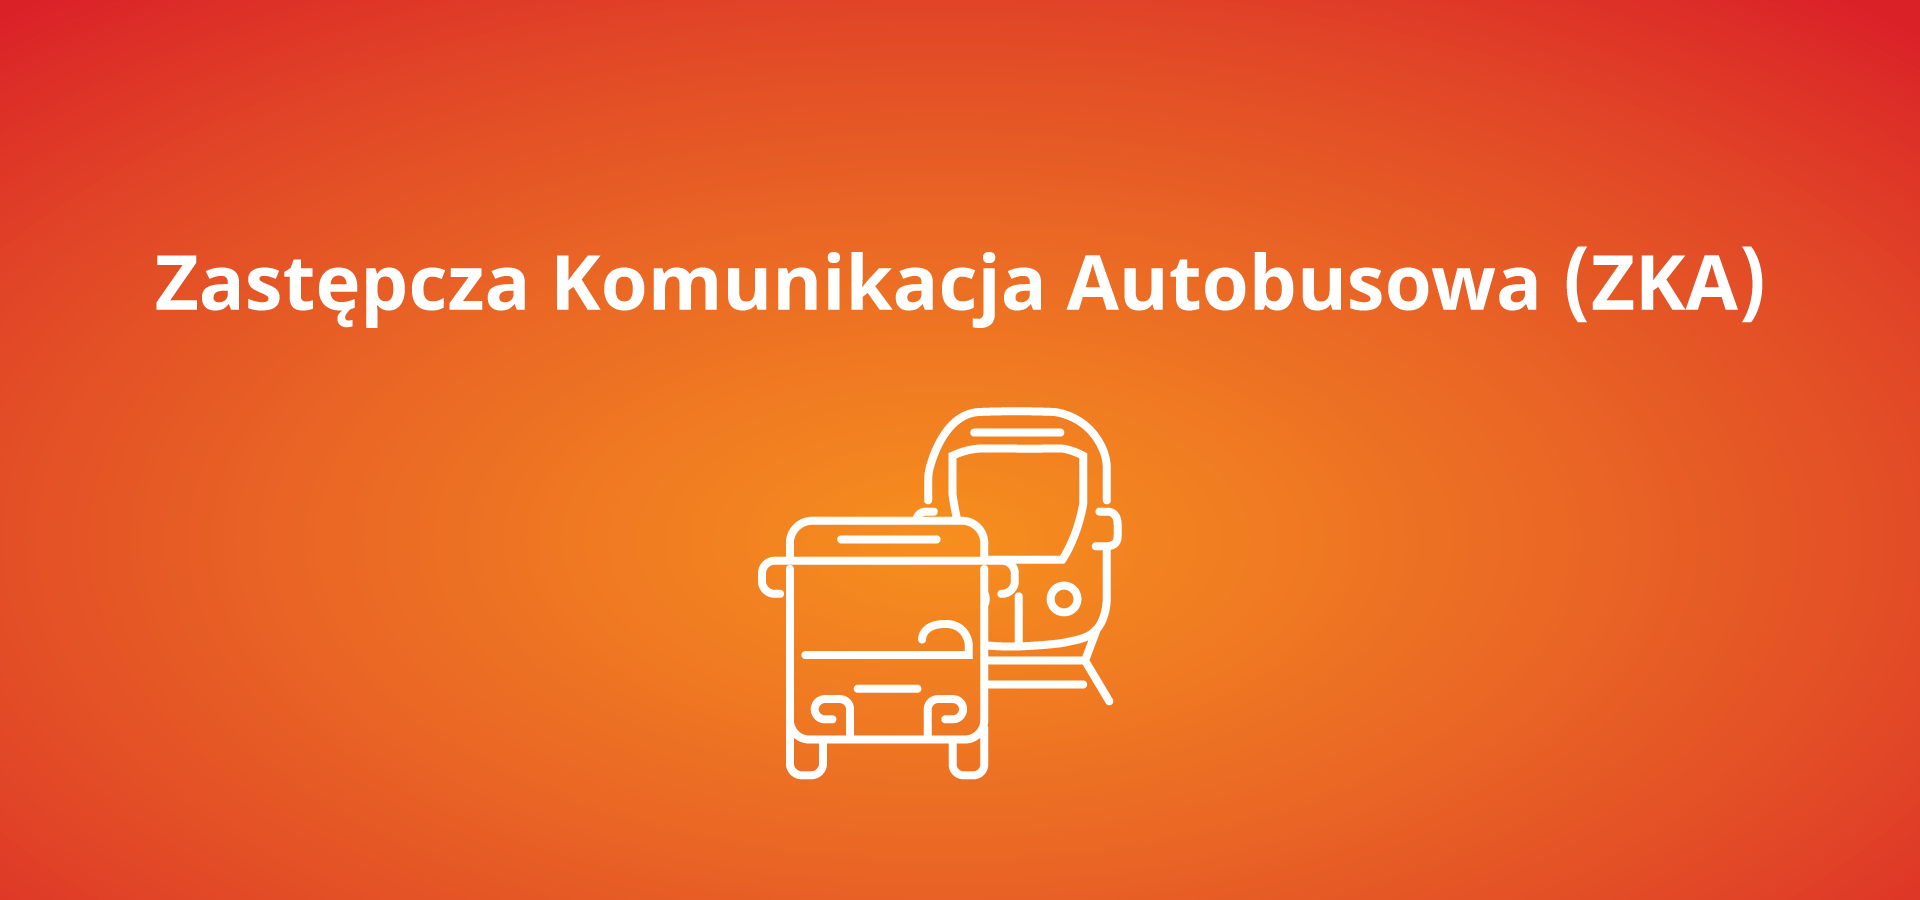  Zastępcza Komunikacja Autobusowa od 12 grudnia 2021 r. do 12 marca 2022 r.